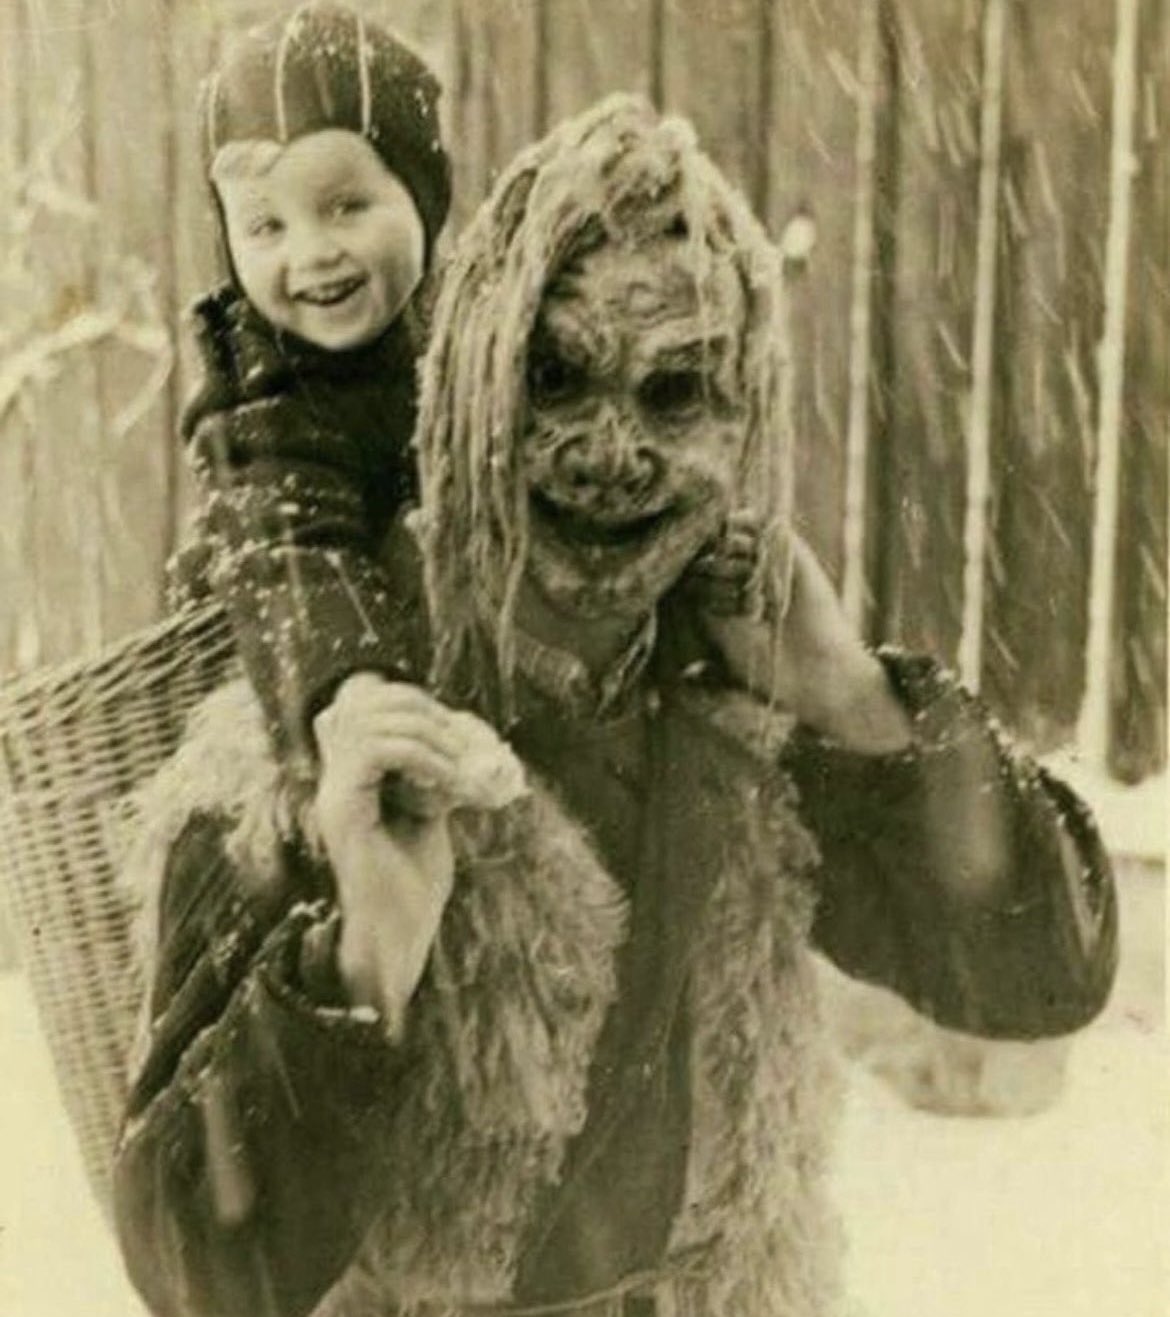 Child with Krampus, 1949